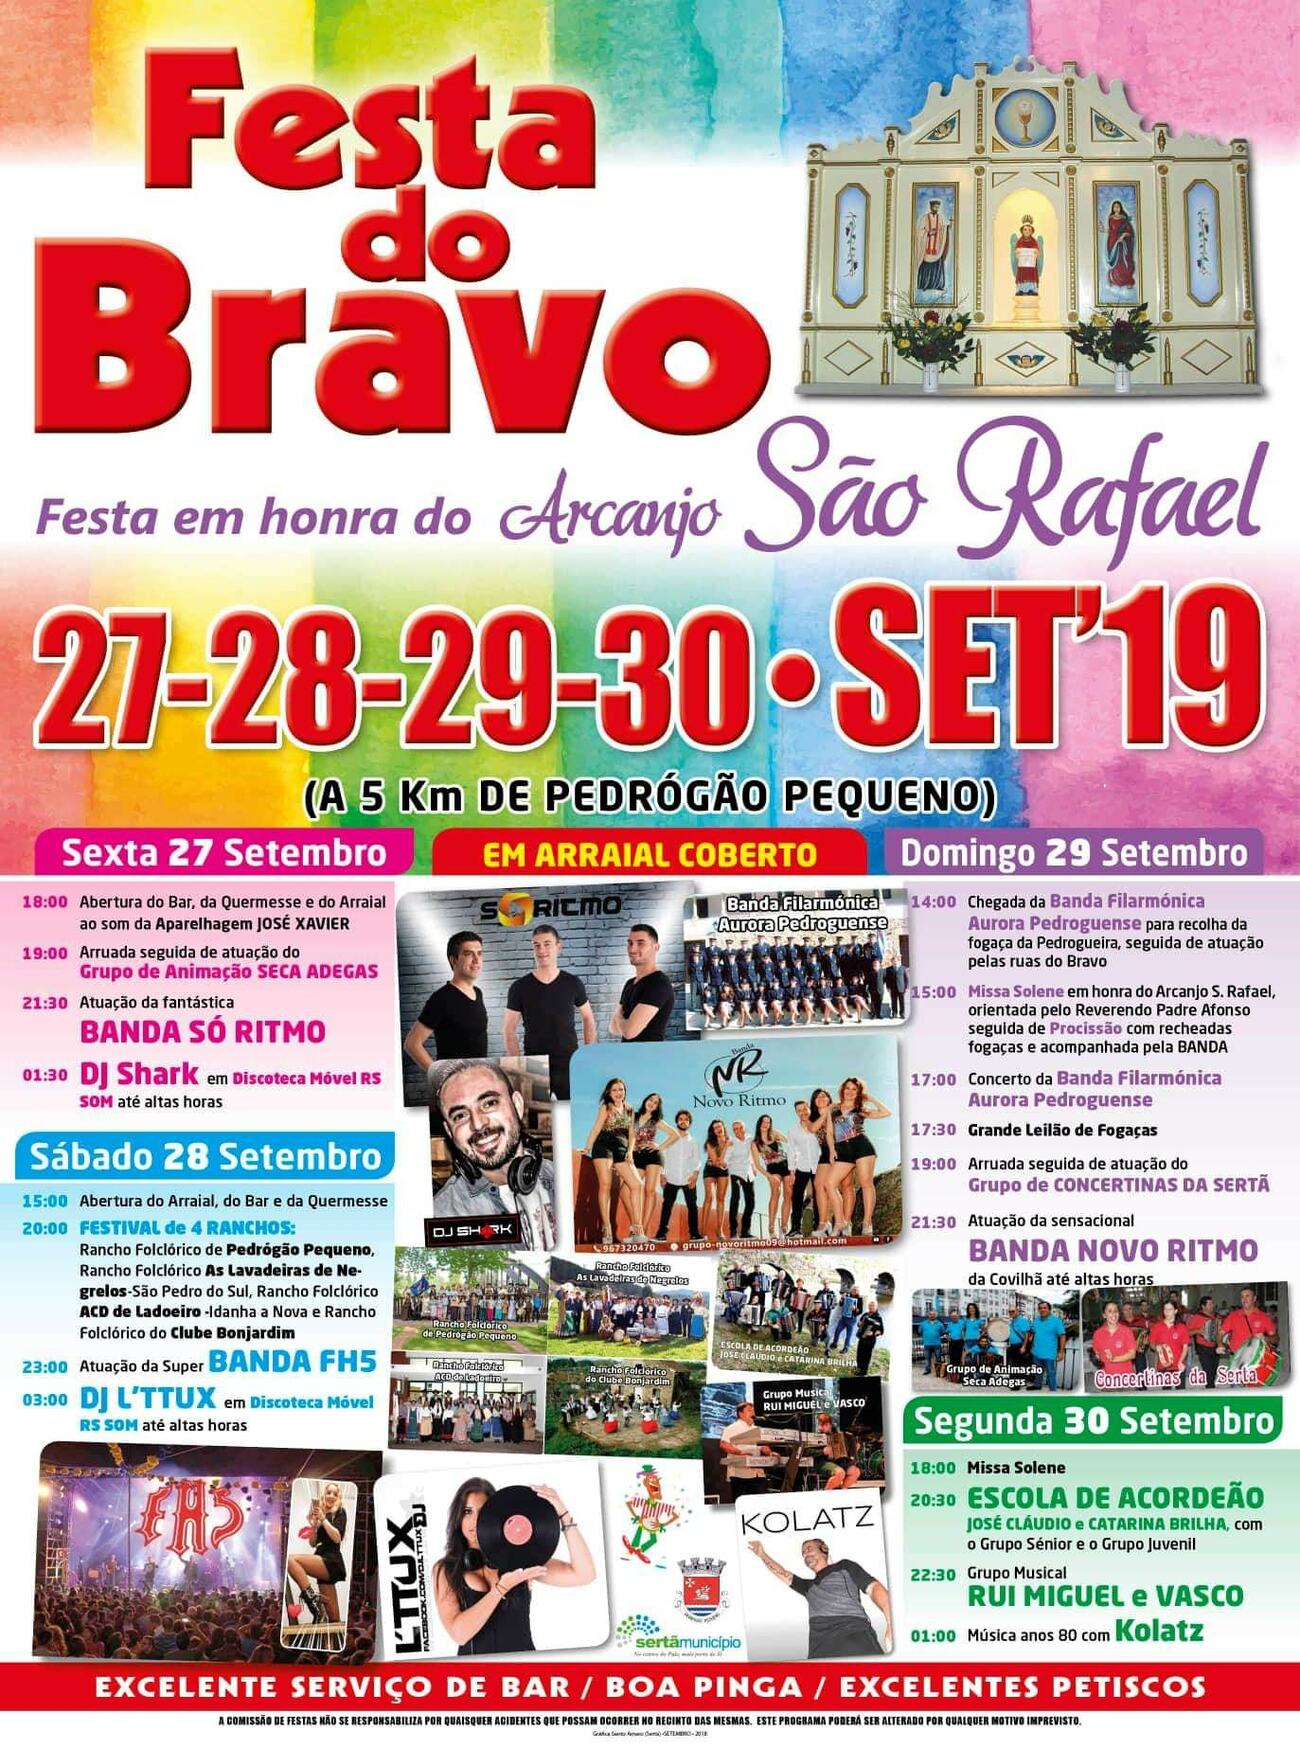 Festas Bravo 2019